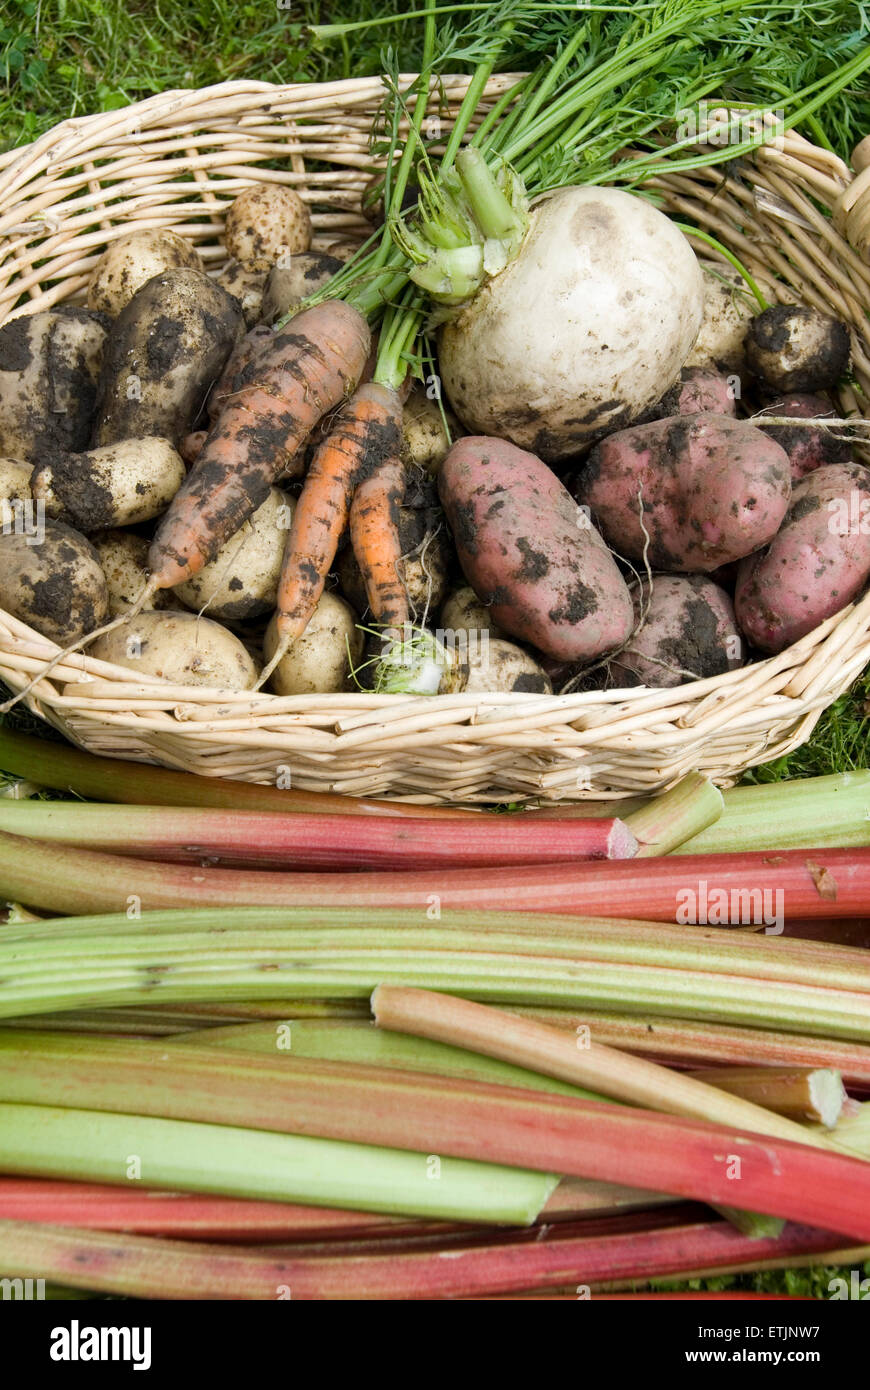 Rouge et blanc sale pommes de terre, le navet et les carottes dans un panier avec de couper les tiges de rhubarbe. Jardin de légumes cultivés sur la récolte, Banque D'Images